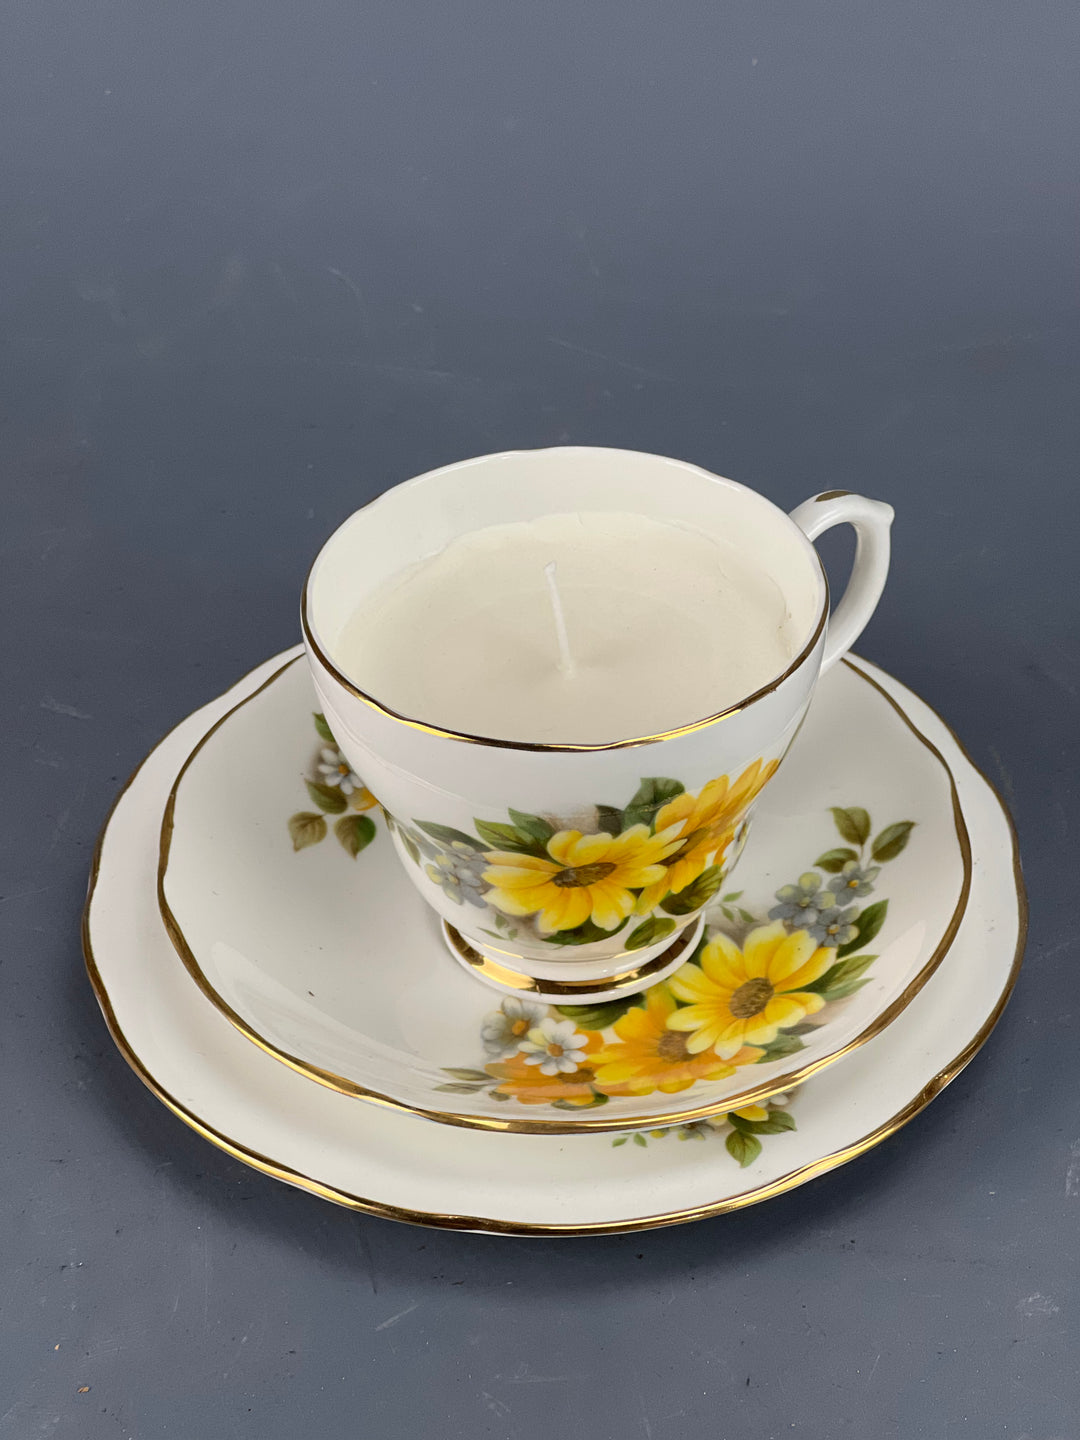 Candela Trio tazza da tè porcellana inglese Bone China